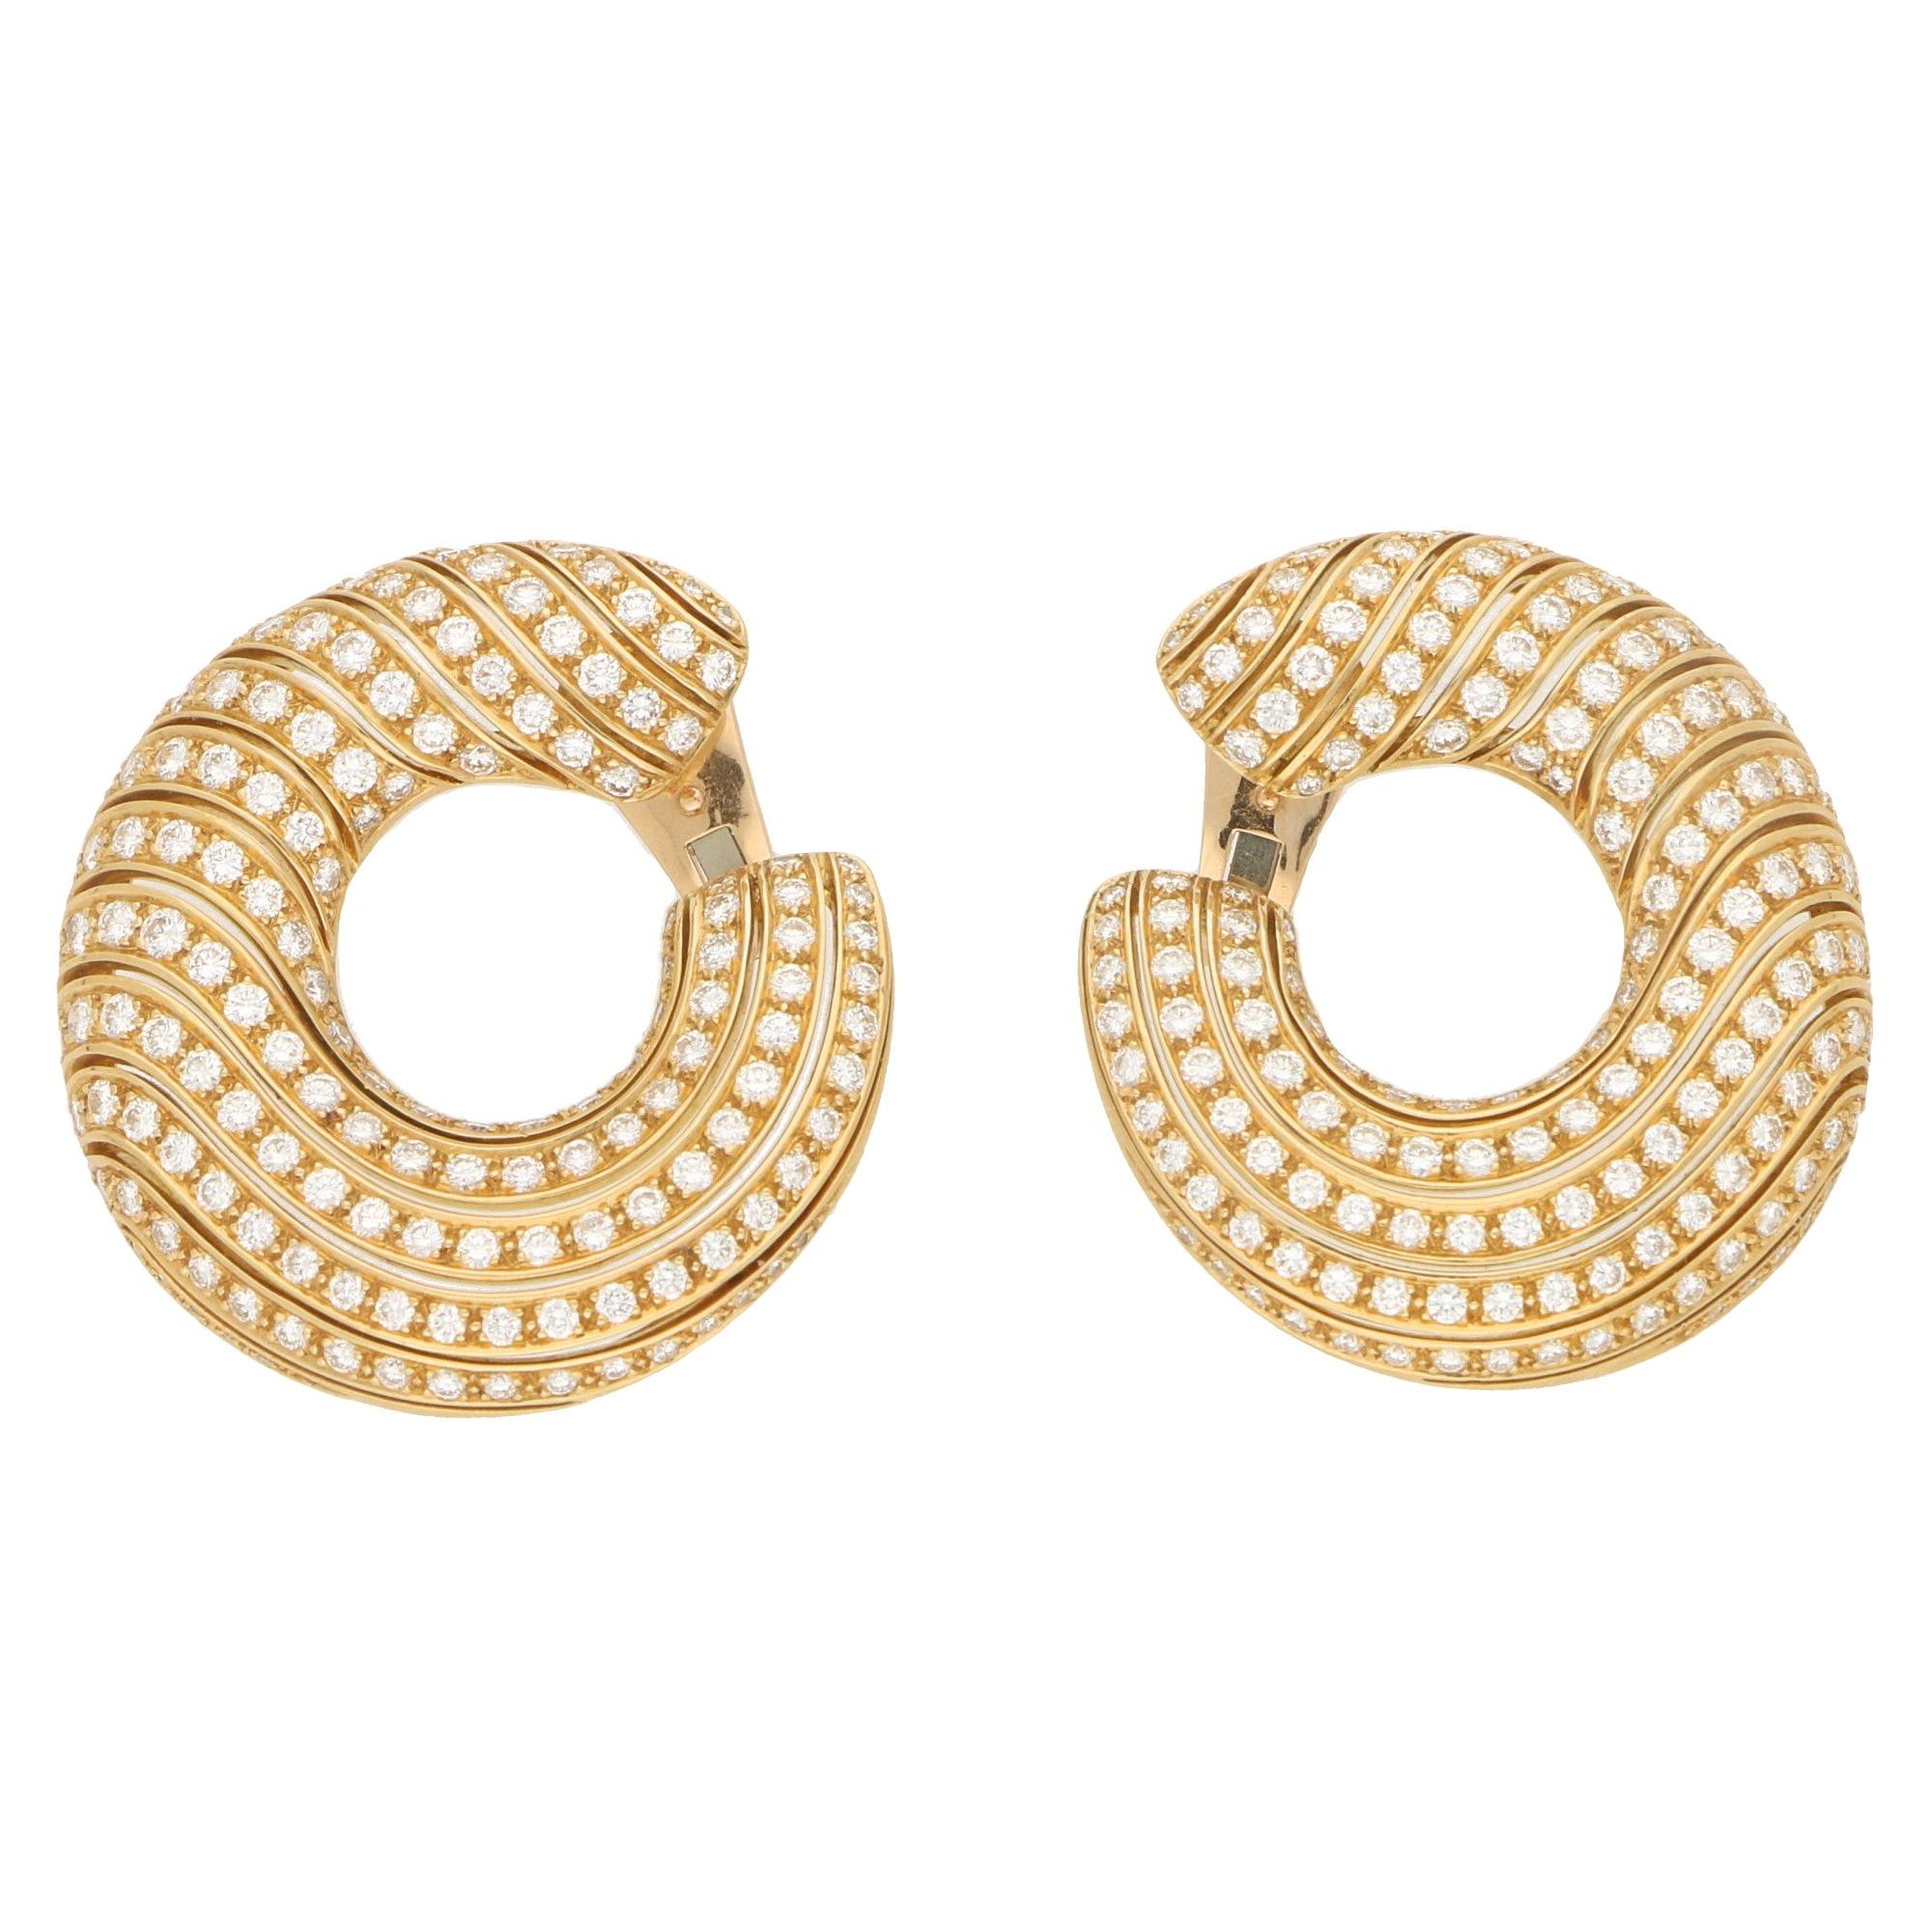 Cartier Neptune Diamond Hoop Clip-On Earrings in 18 Karat Yellow Gold